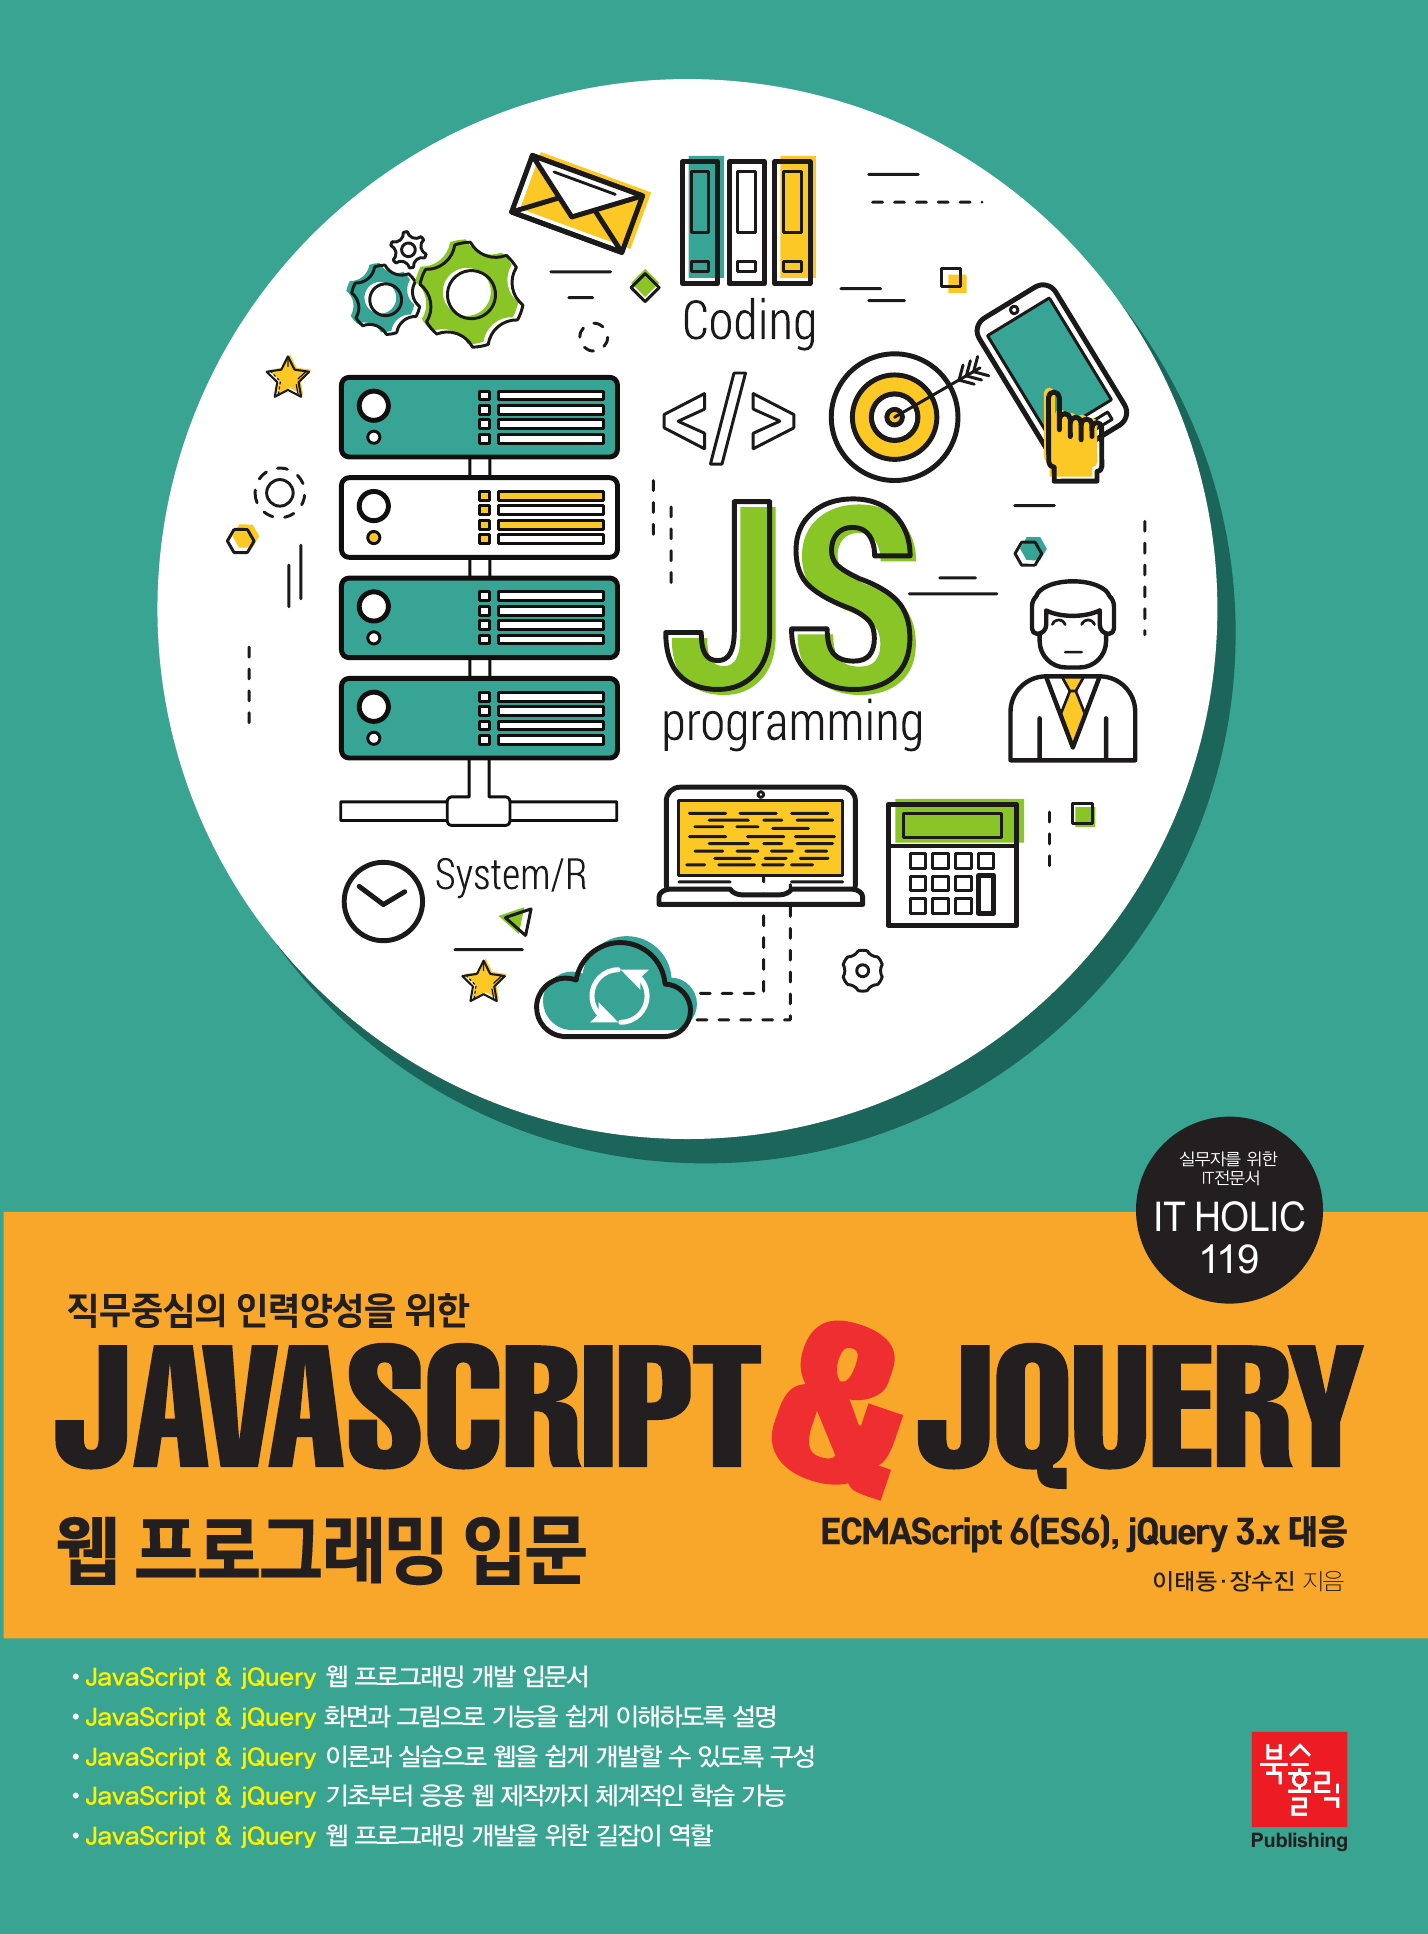 직무중심의 인력양성을 위한 JavaScript & jQuery 웹 프로그래밍 입문